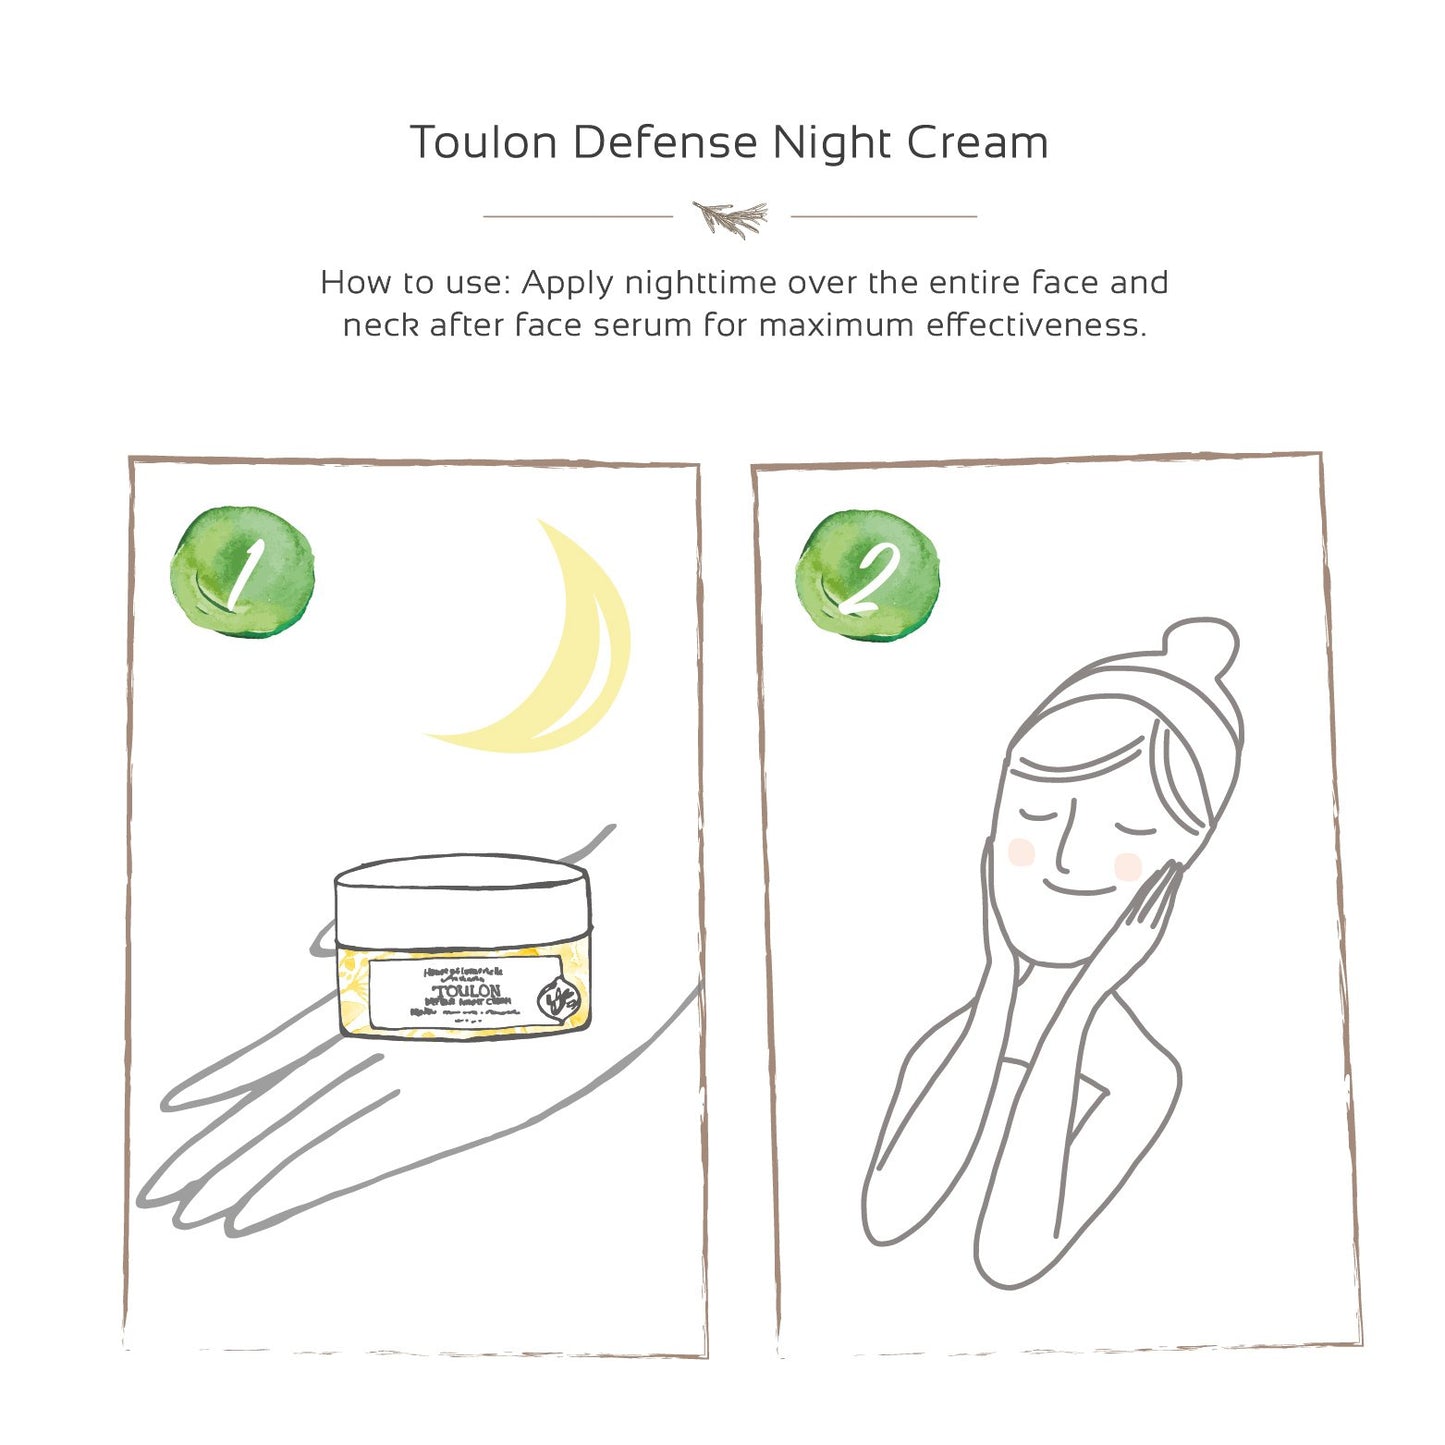 Toulon Defense Night Cream